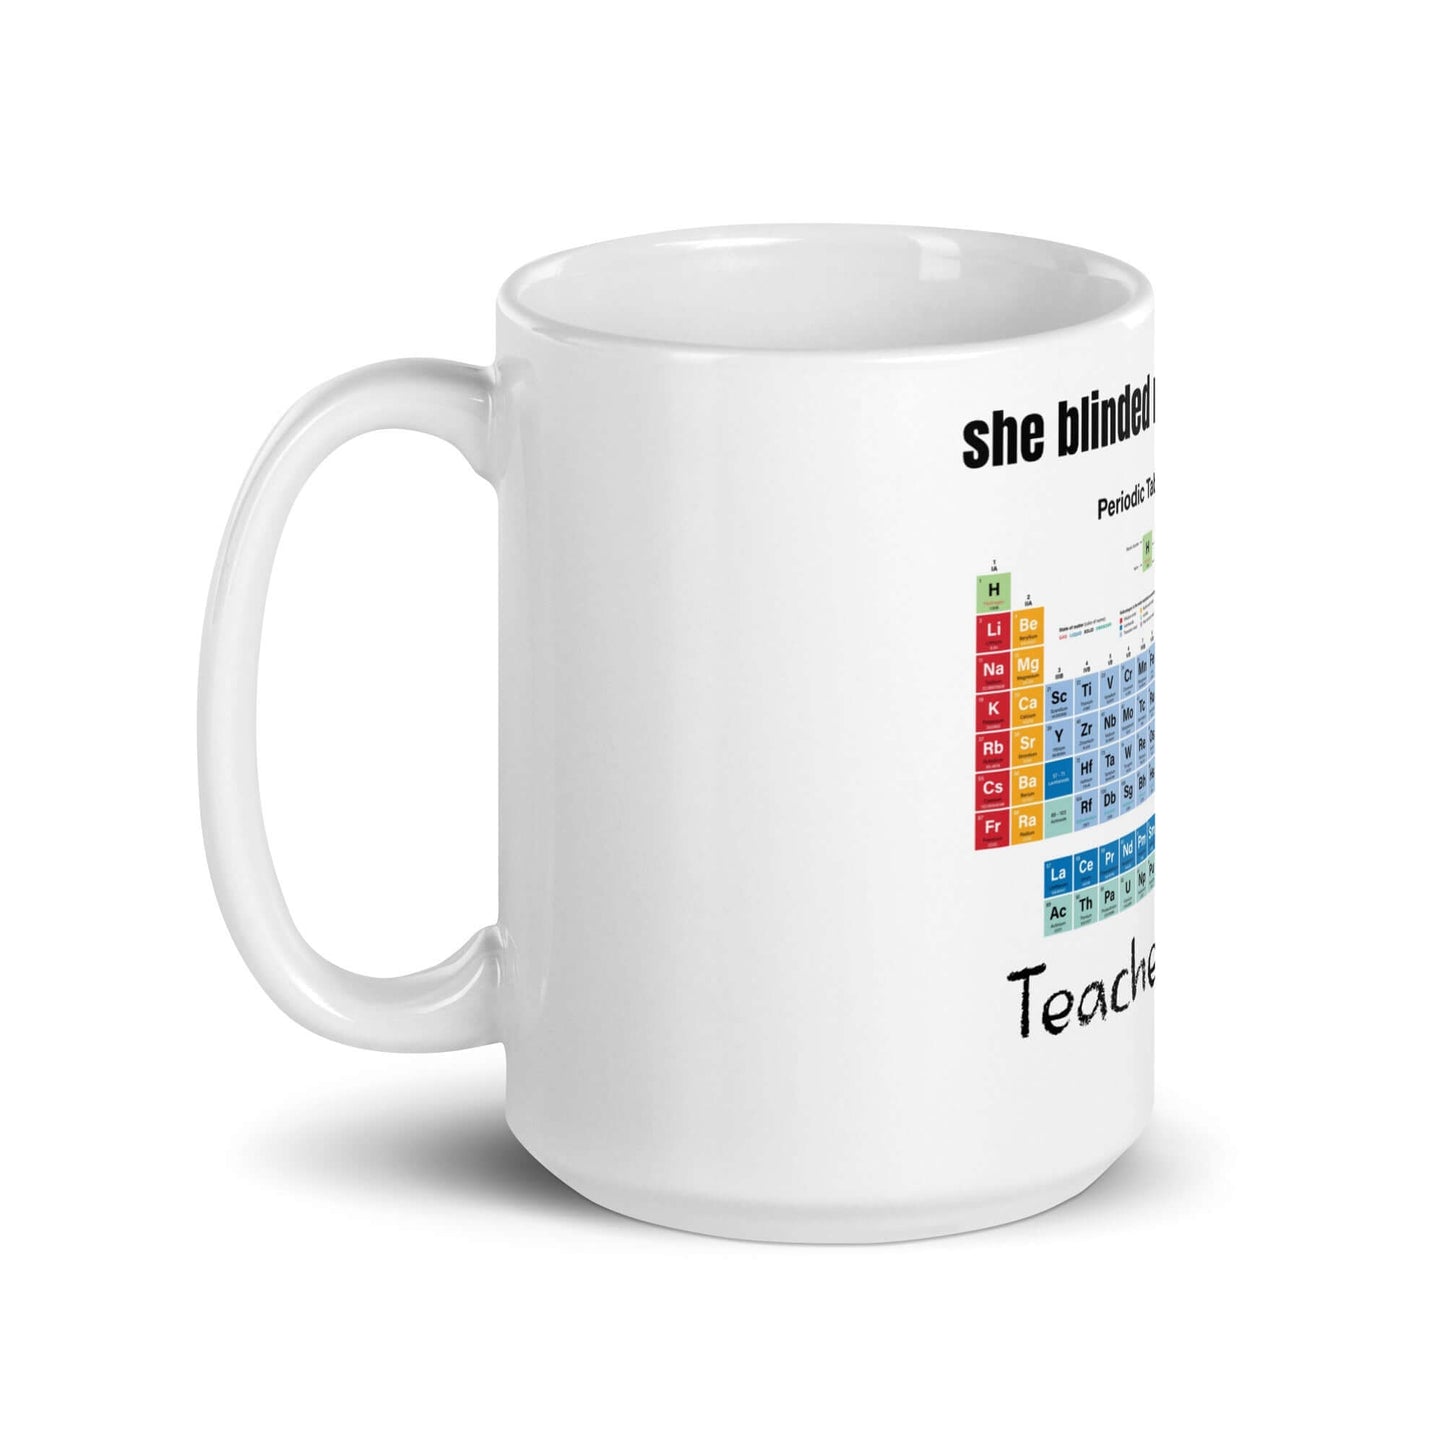 Science Teacher - White glossy mug - Horrible Designs